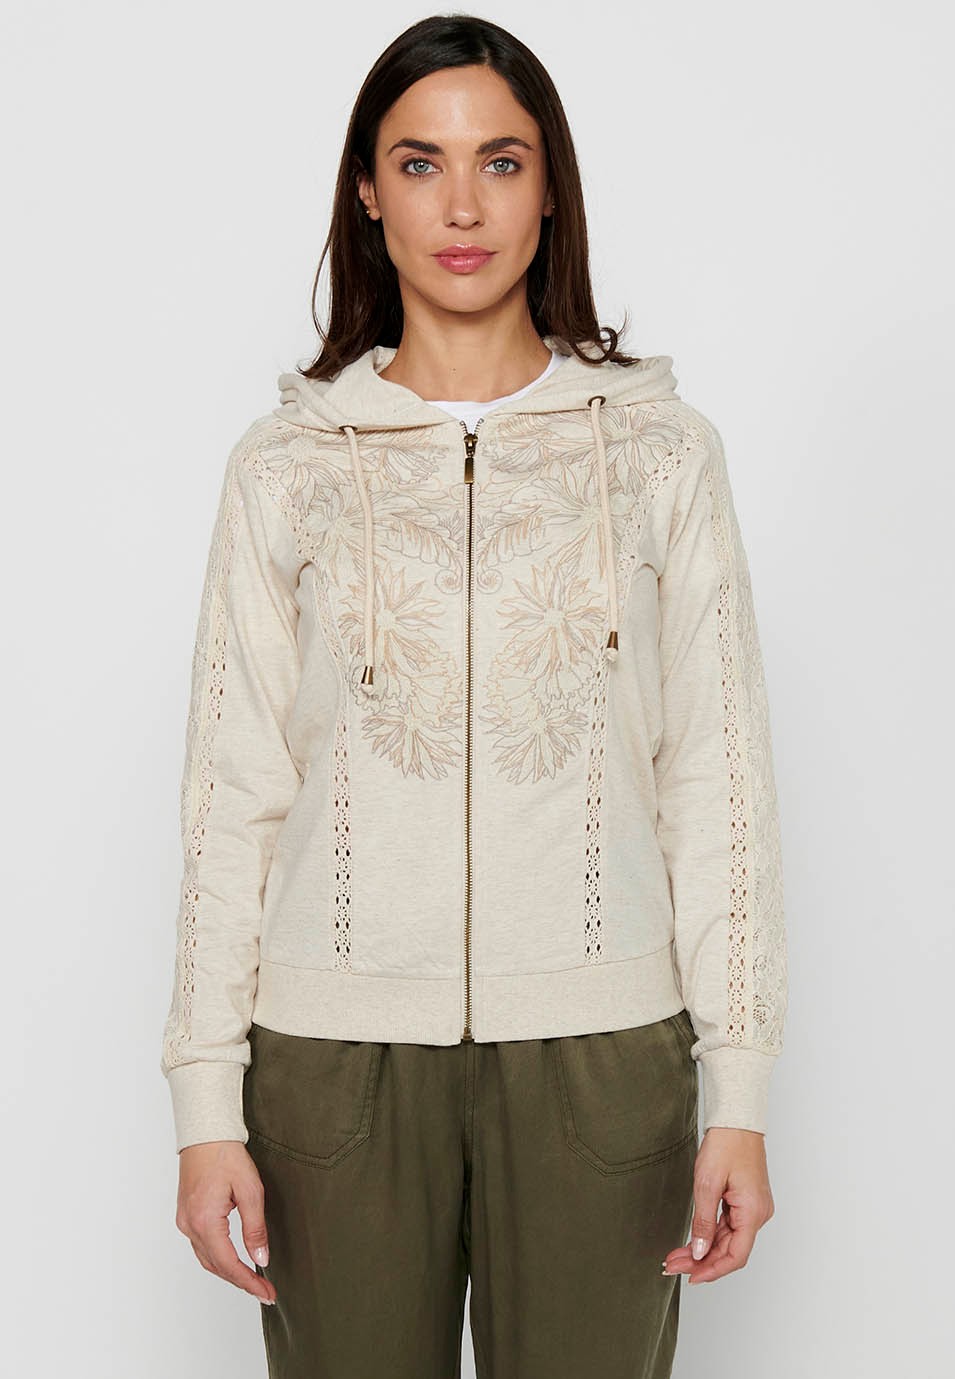 Veste sweat-shirt avec fermeture à glissière sur le devant avec détails en dentelle et col à capuche couleur pierre pour femme 5